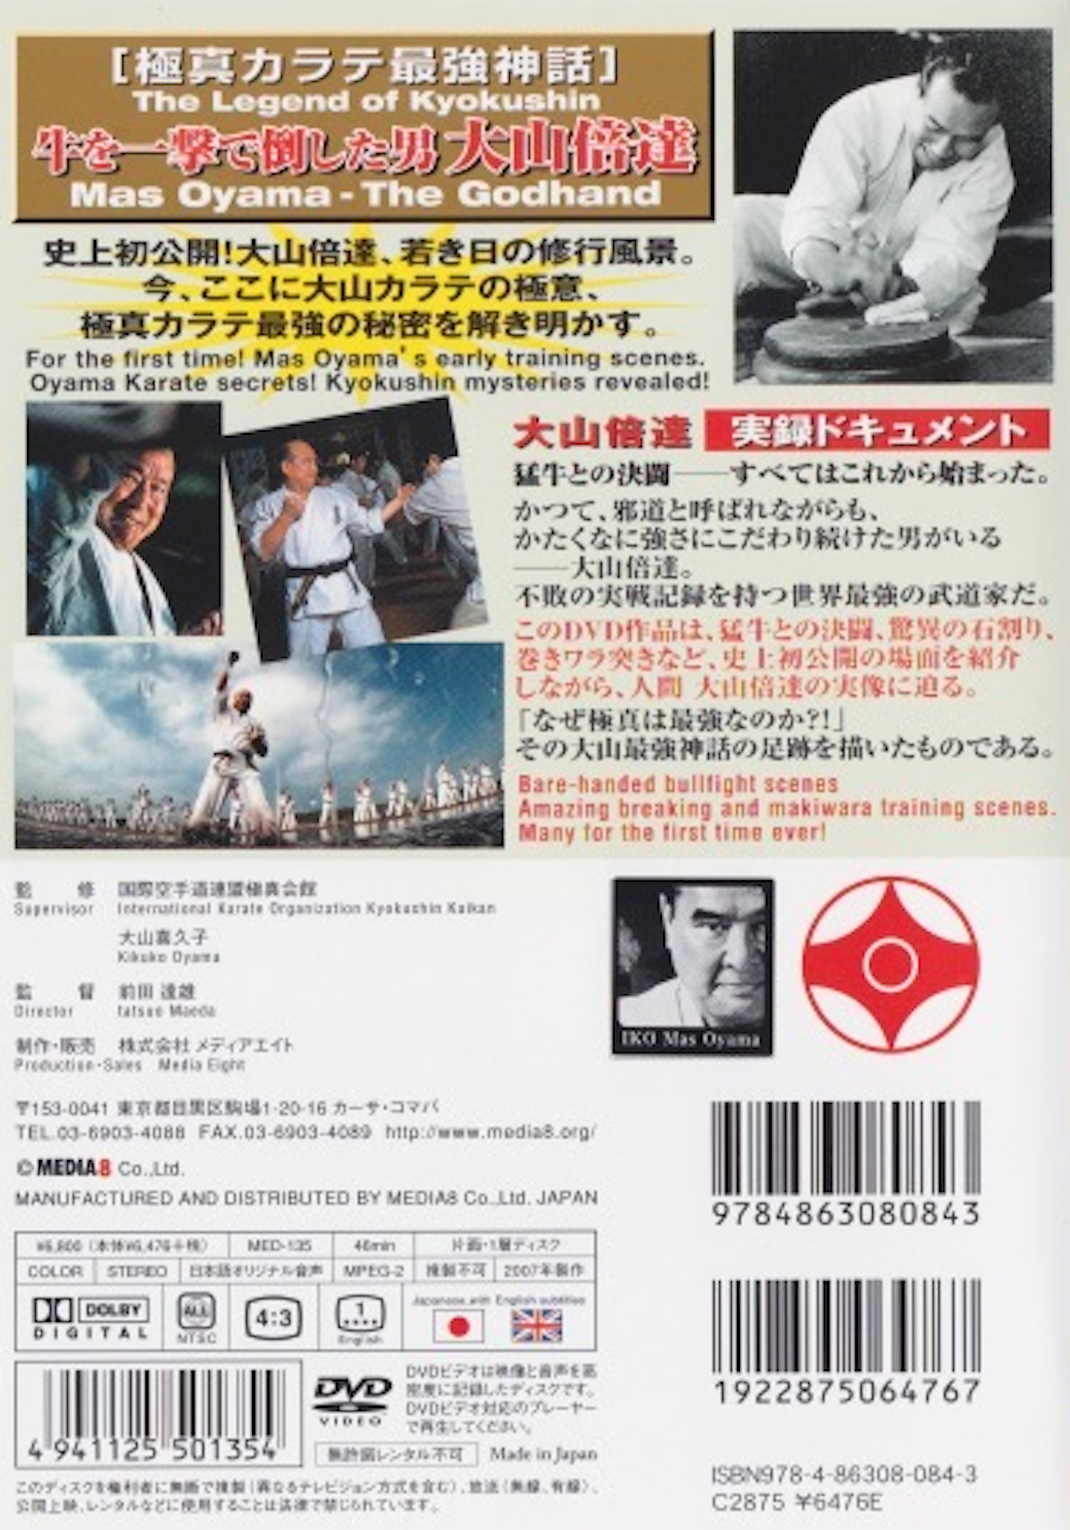 Legend of Kyokushin: Mas Oyama the Godhand DVD